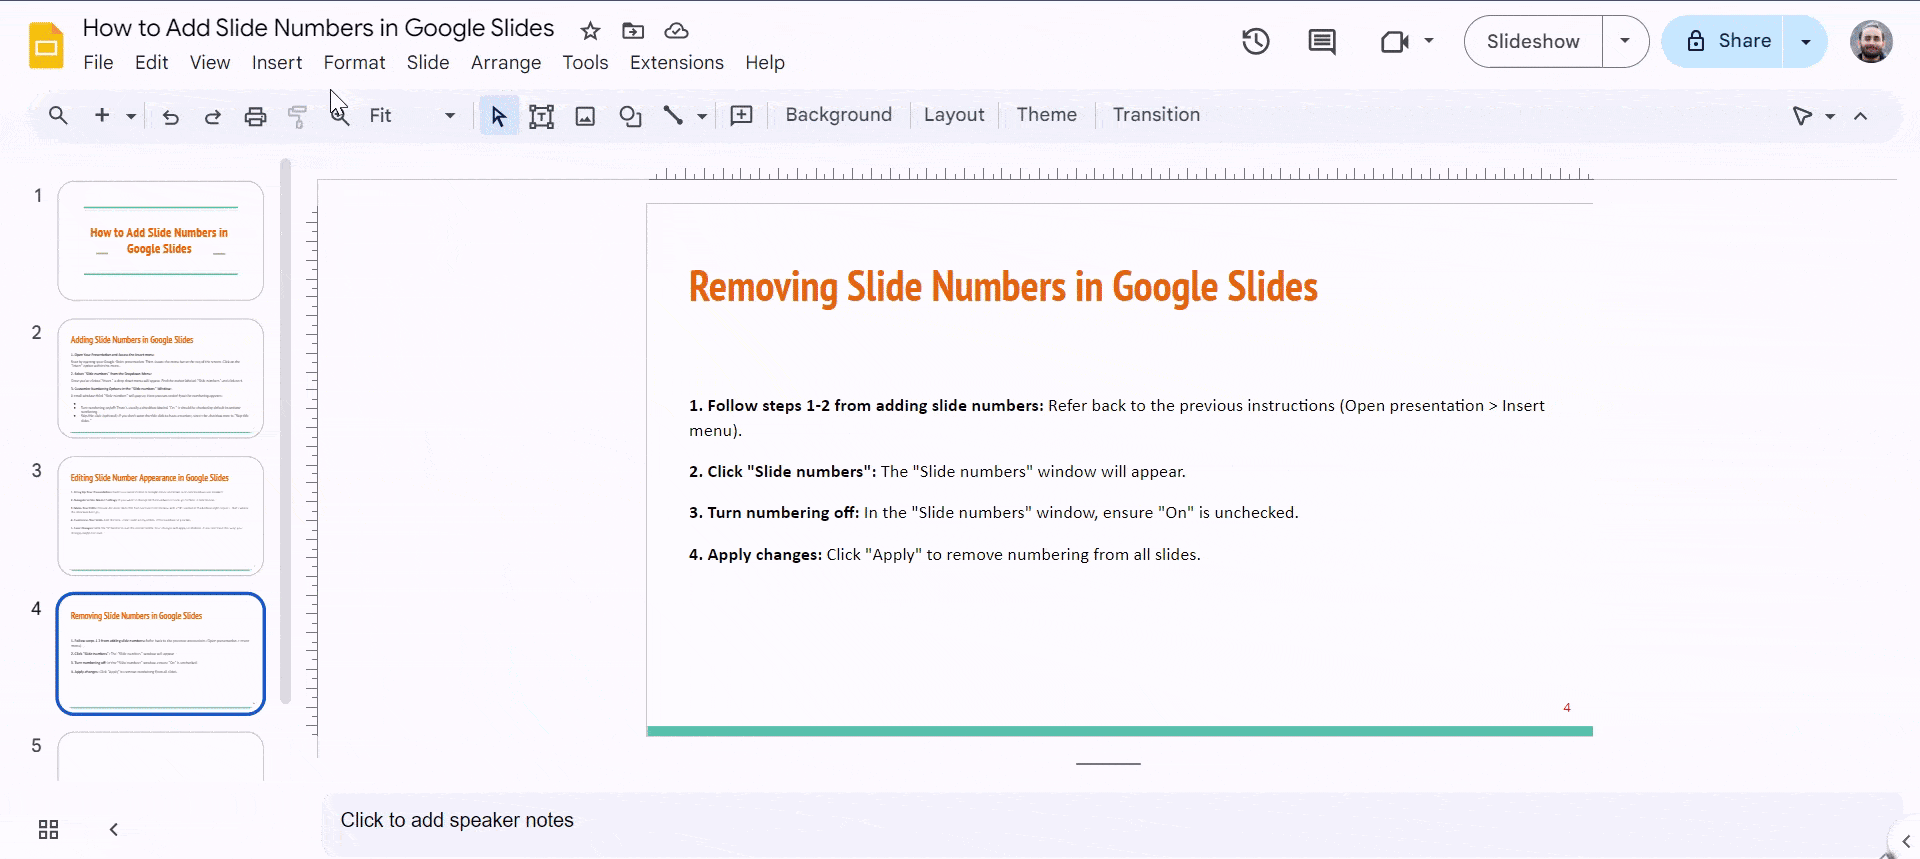 Removing Slide Numbers in Google Slides